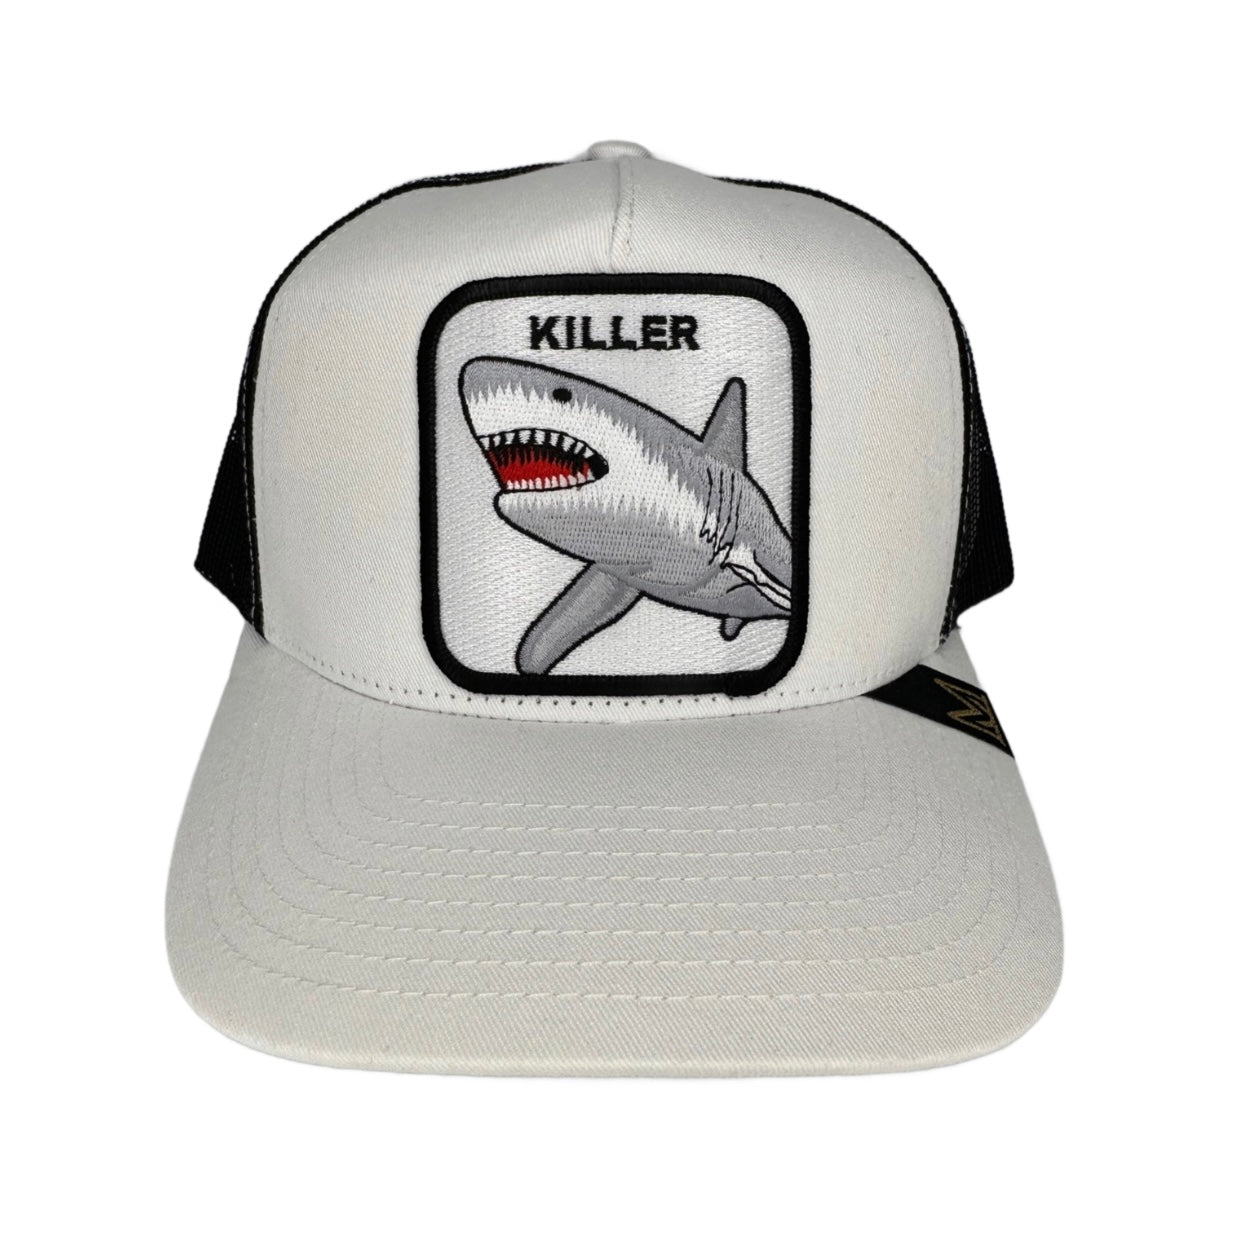 Killer Trucker Hat